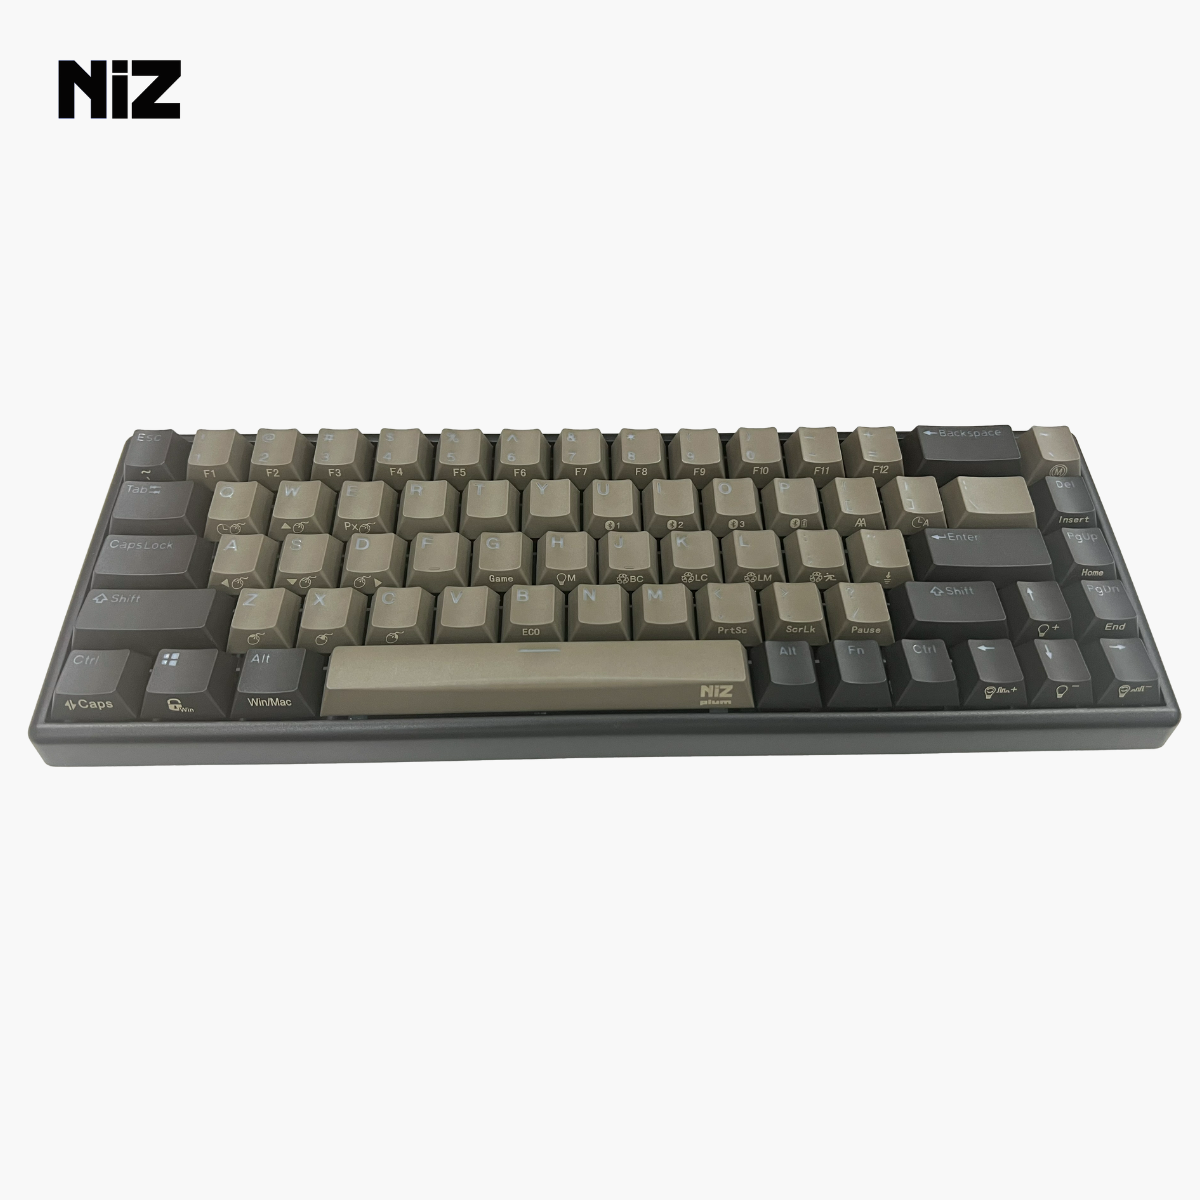 NIZ 黒系配色 静電容量無接点方式キーボード T-series 35g